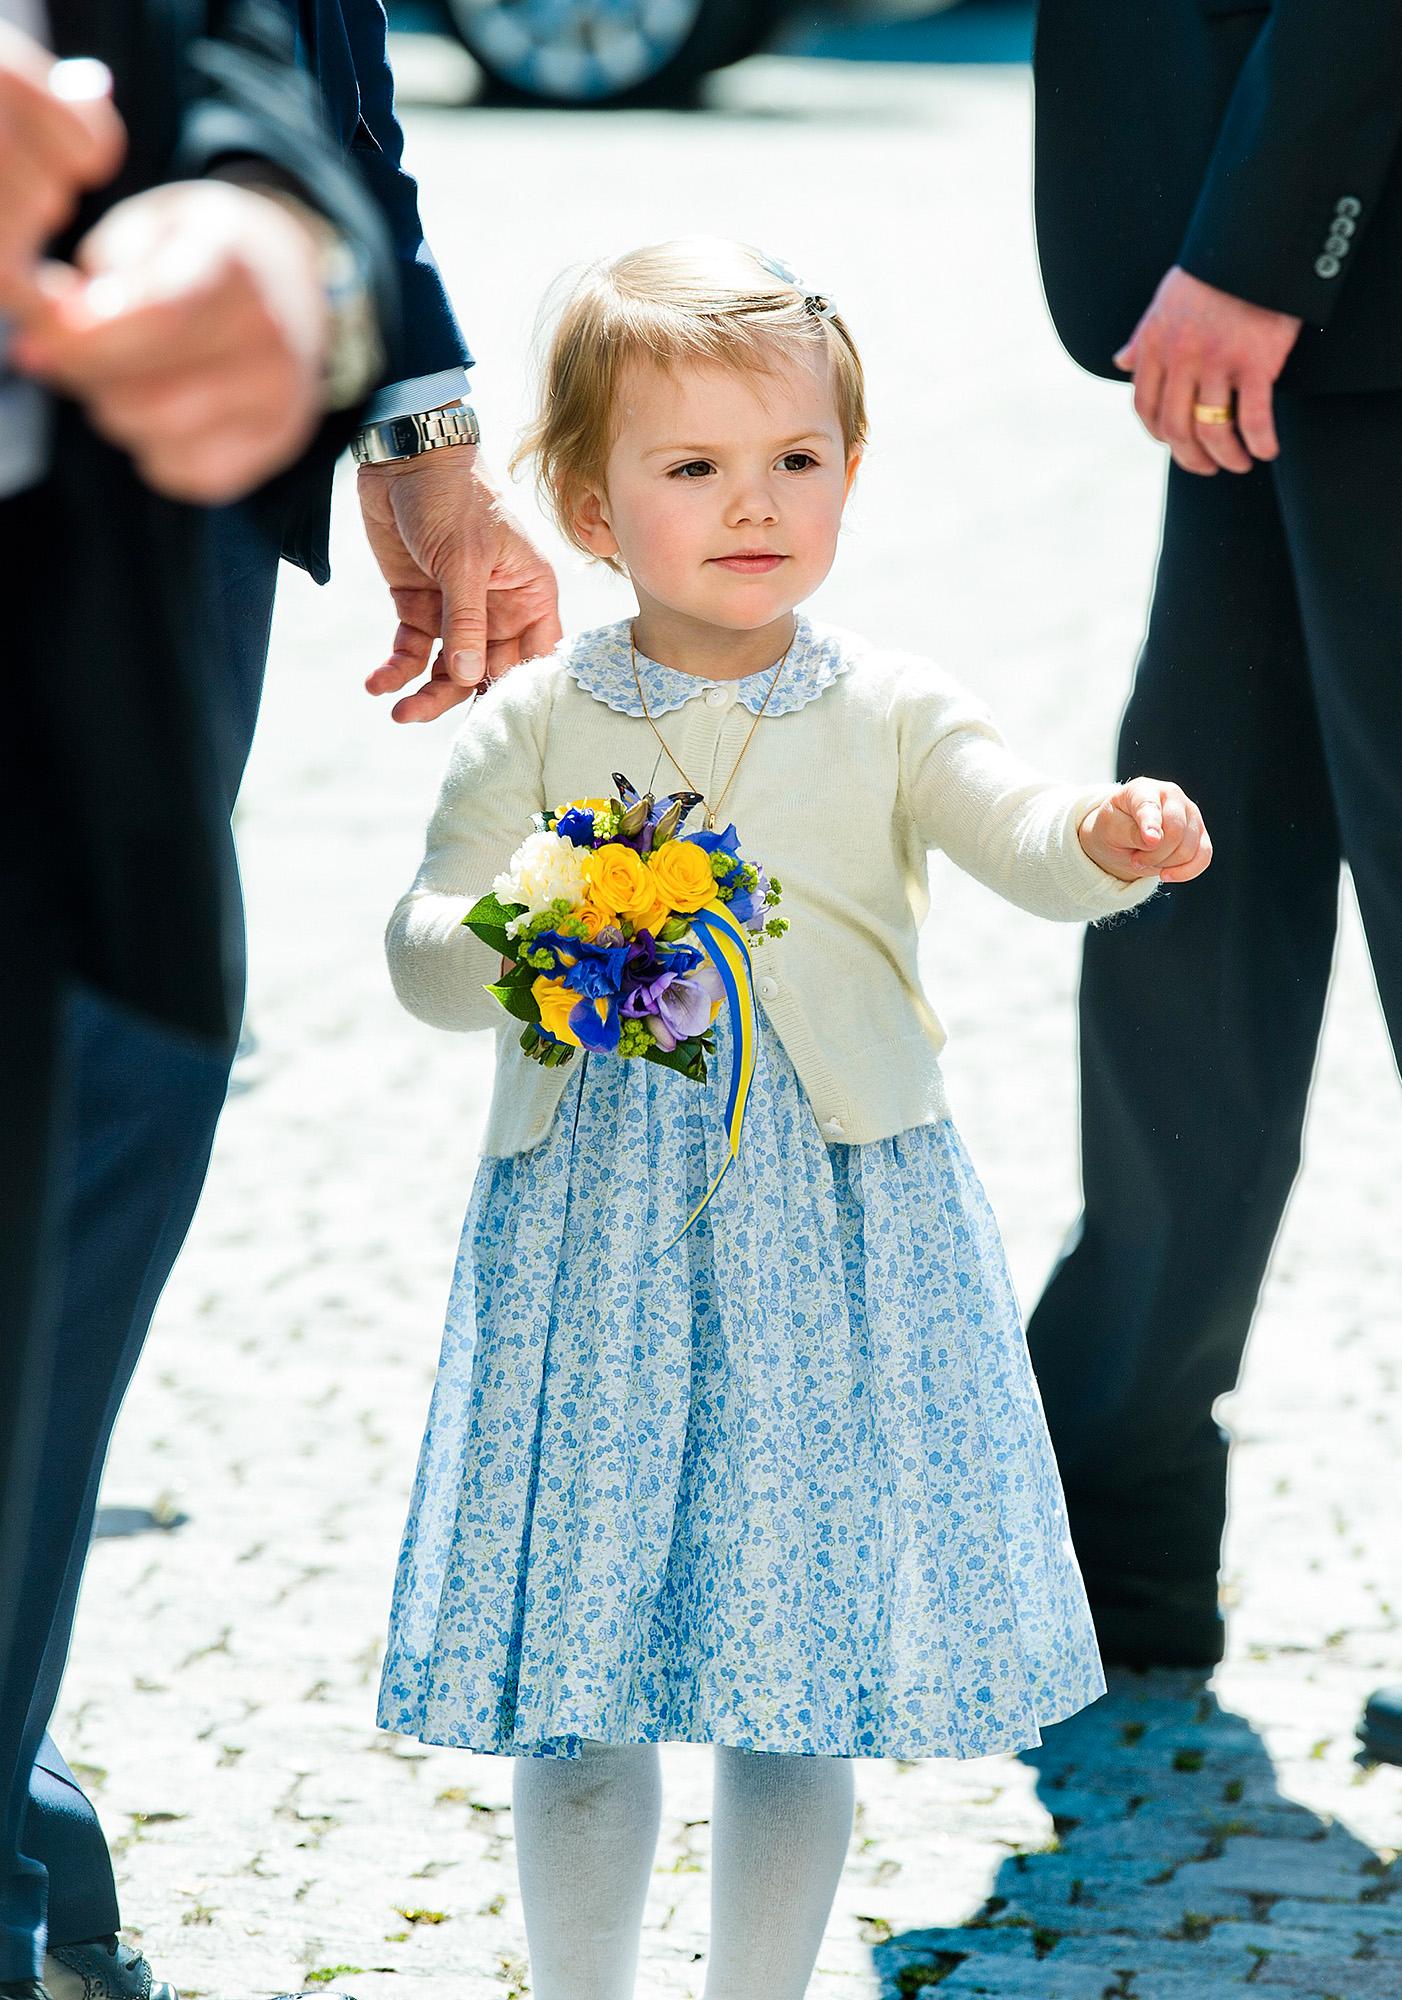 Prinsessan gör sitt första officella uppdrag tillsammans med mamma Victoria och pappa Daniel klädd i blåblommig klänning matchat med citrongul kofta.